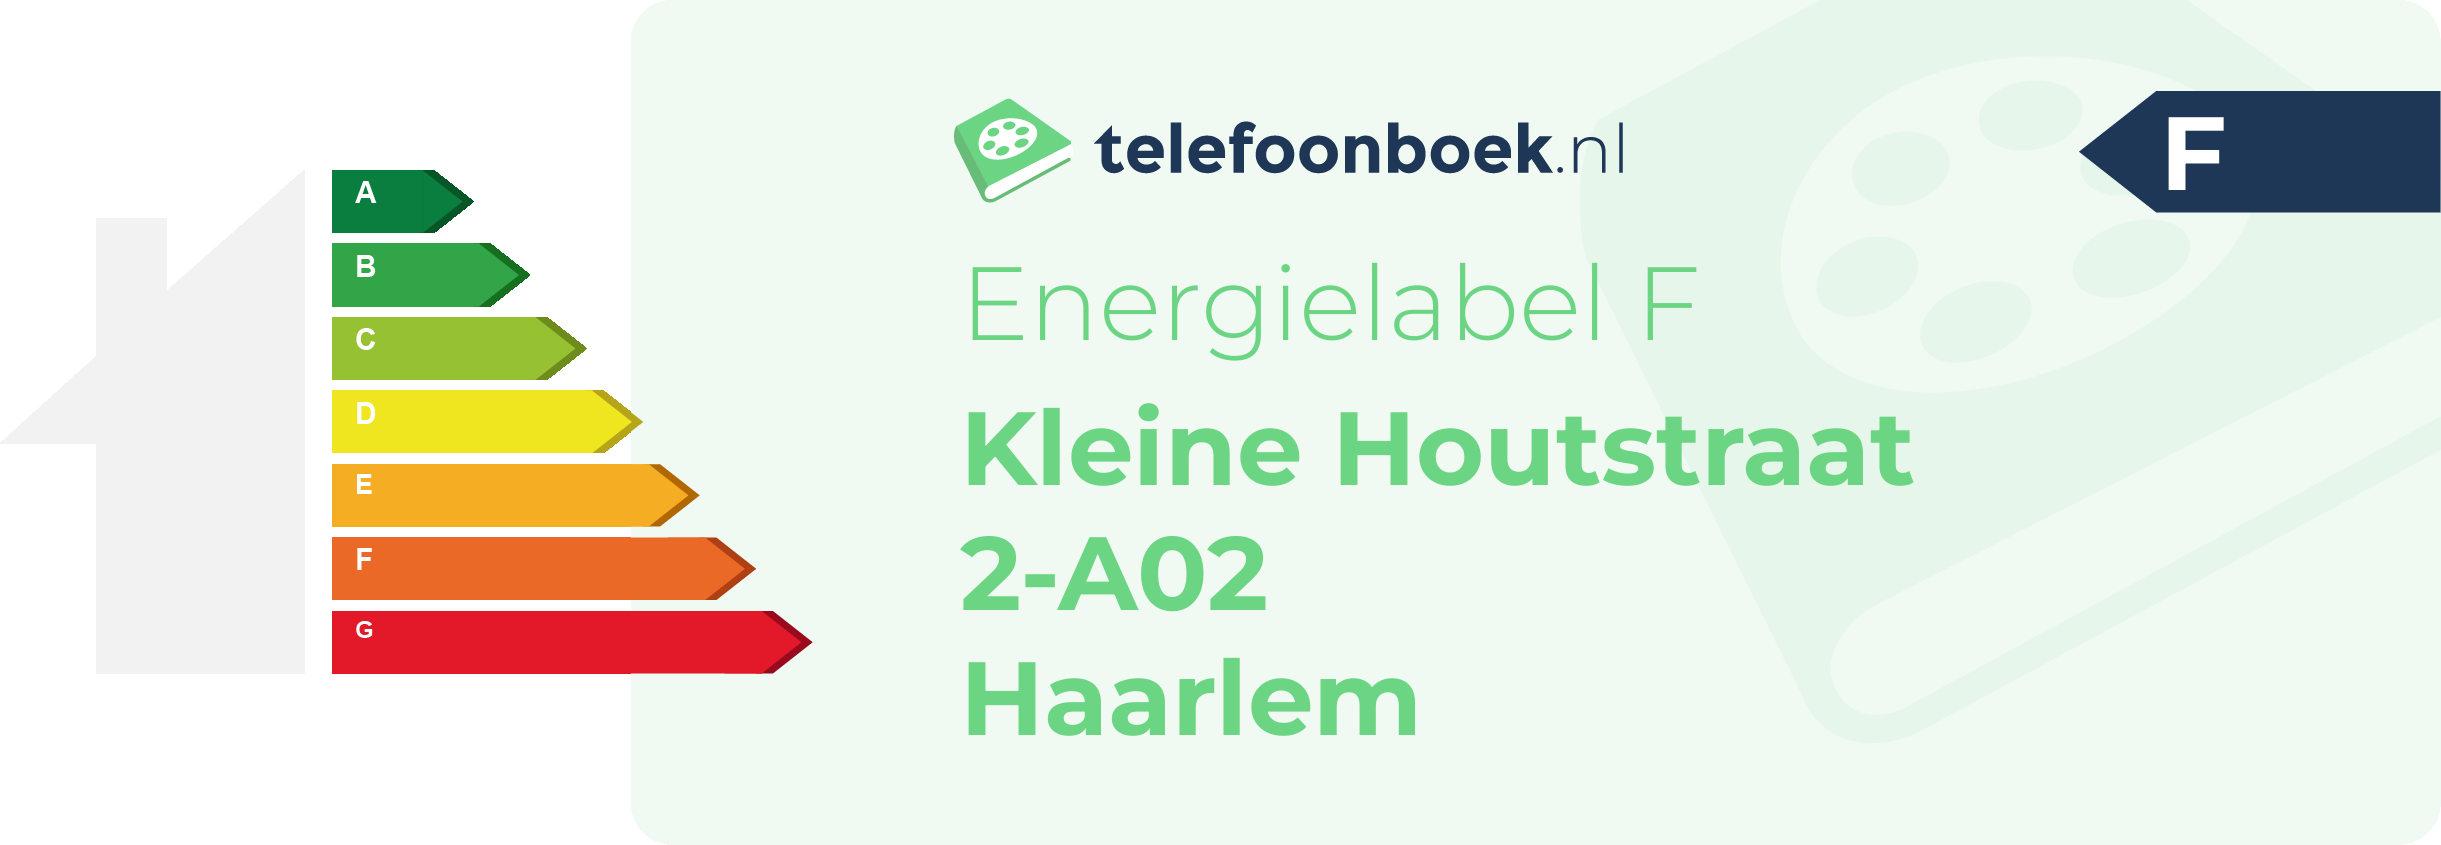 Energielabel Kleine Houtstraat 2-A02 Haarlem